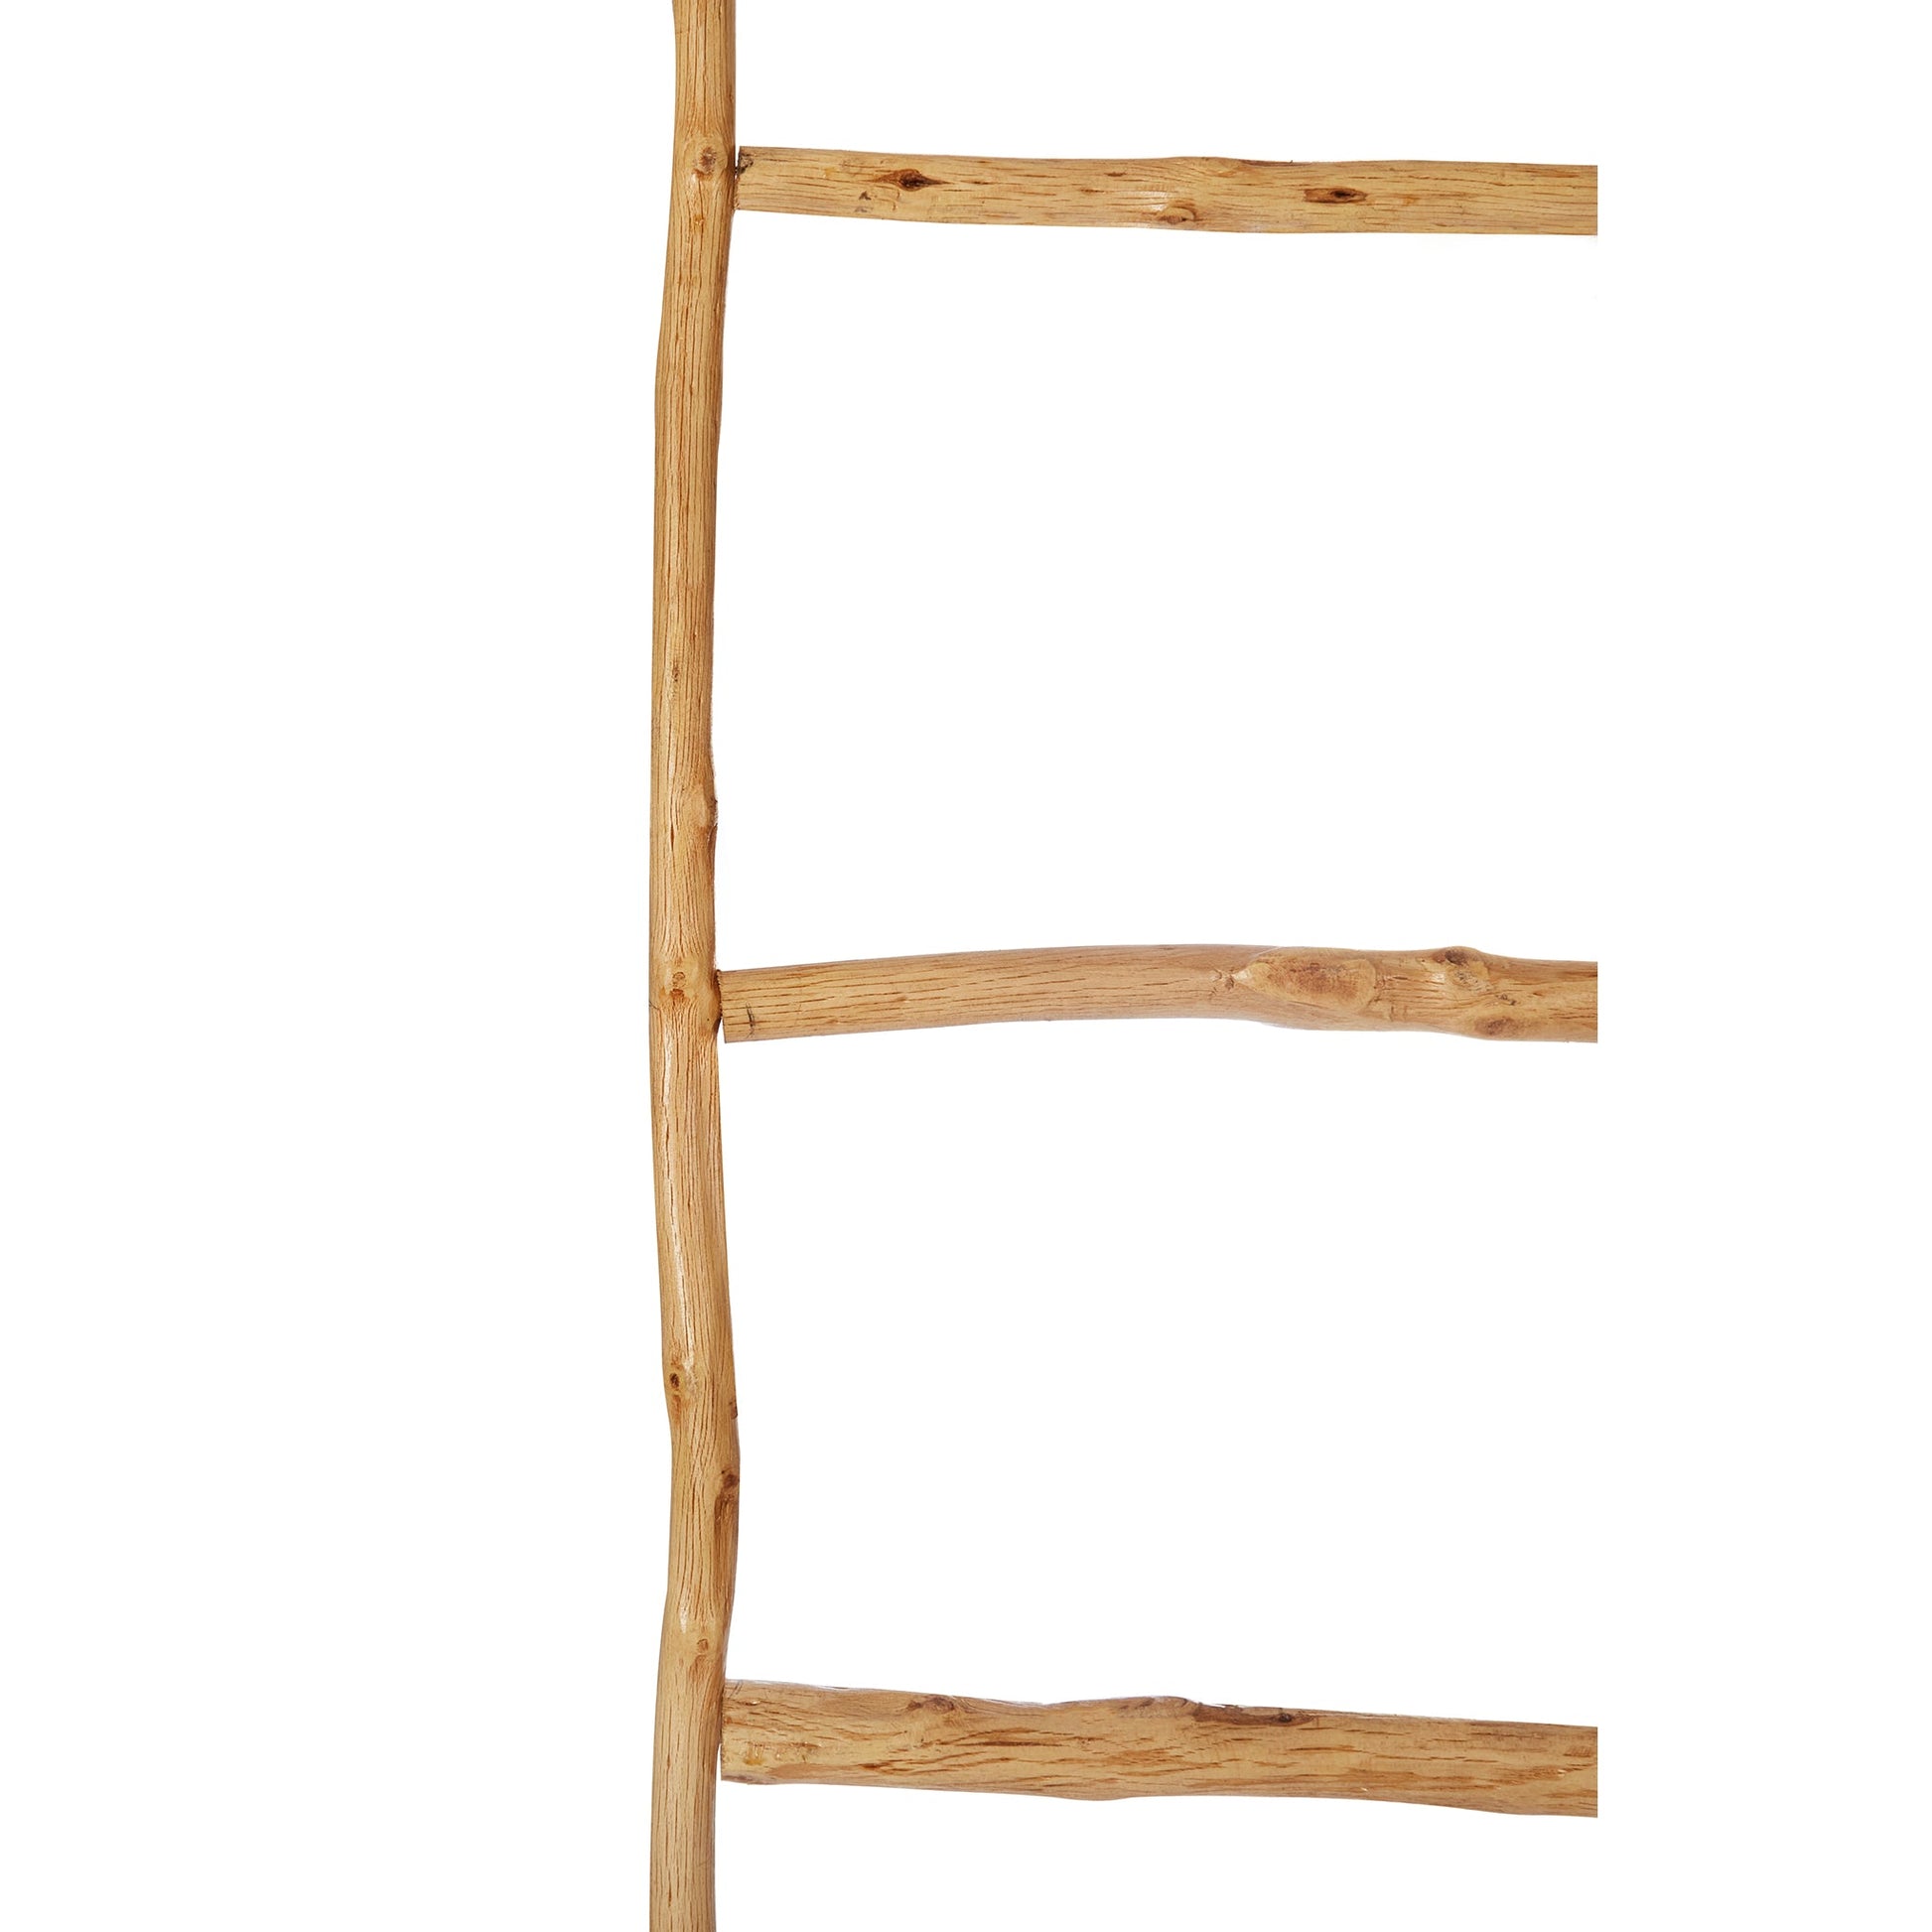 Ladder - Bohowoodland